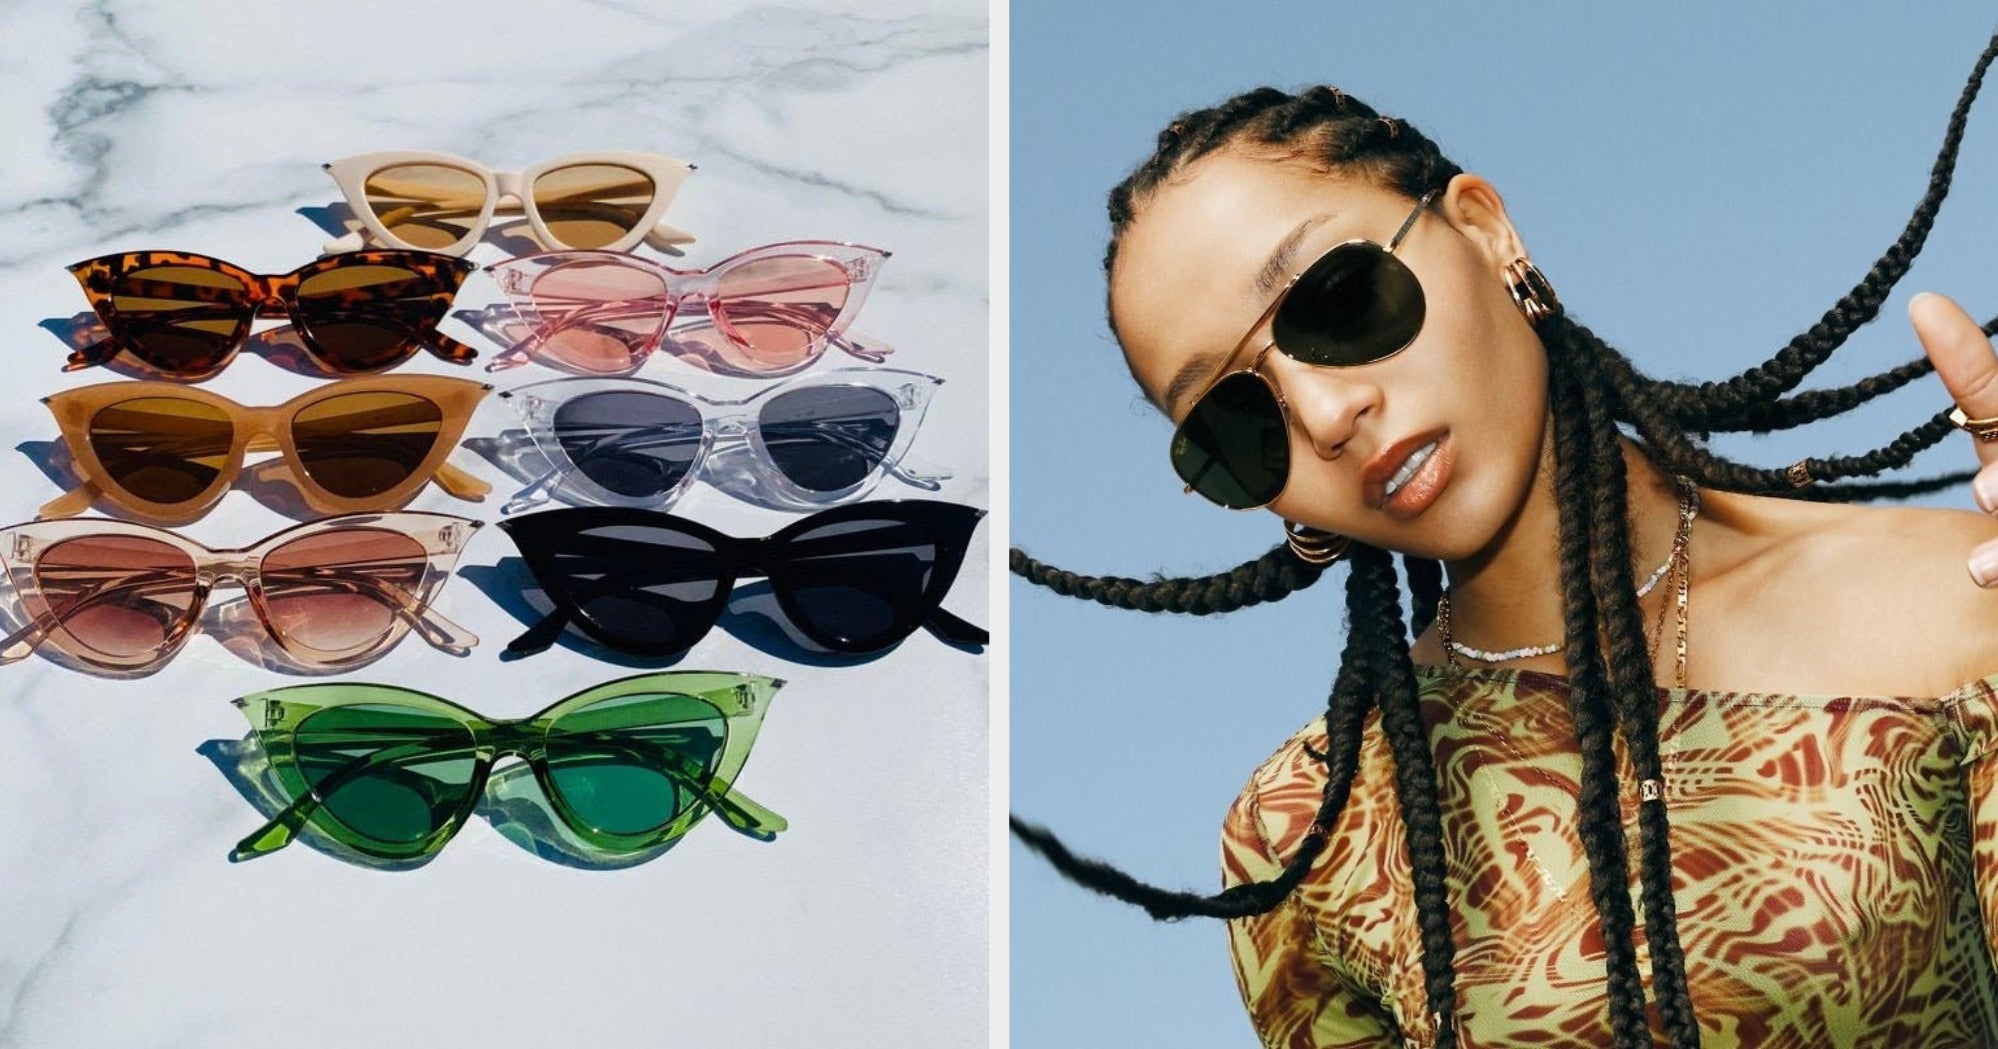 Sunglass Hut Legends Outlets  Sunglasses for Men, Women & Kids